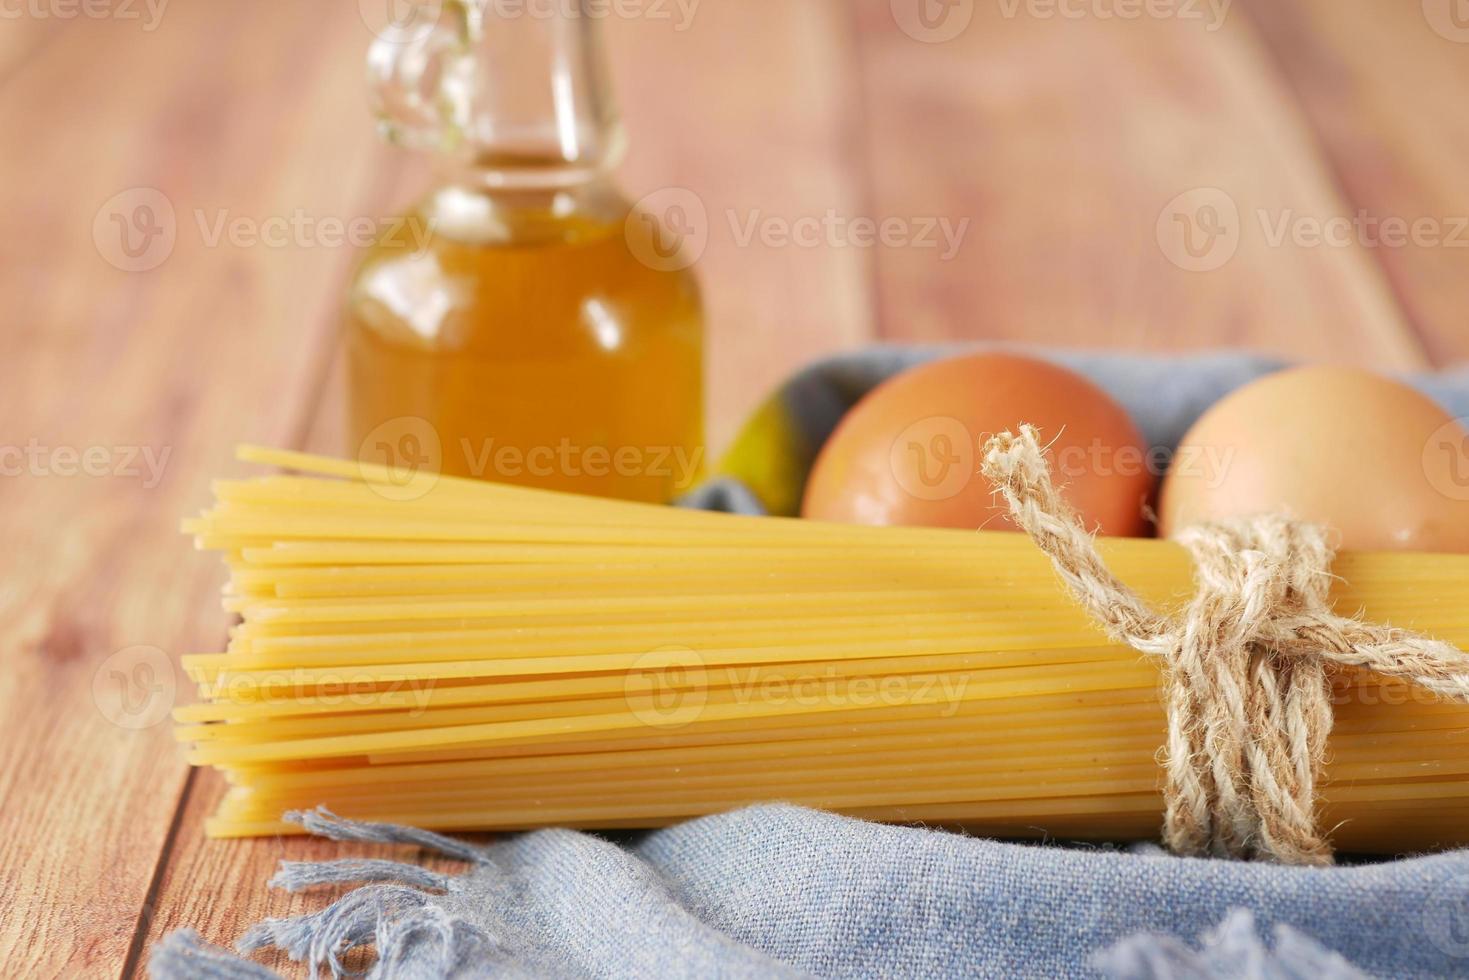 huevo de espagueti largo amarillo y aceite en la mesa foto